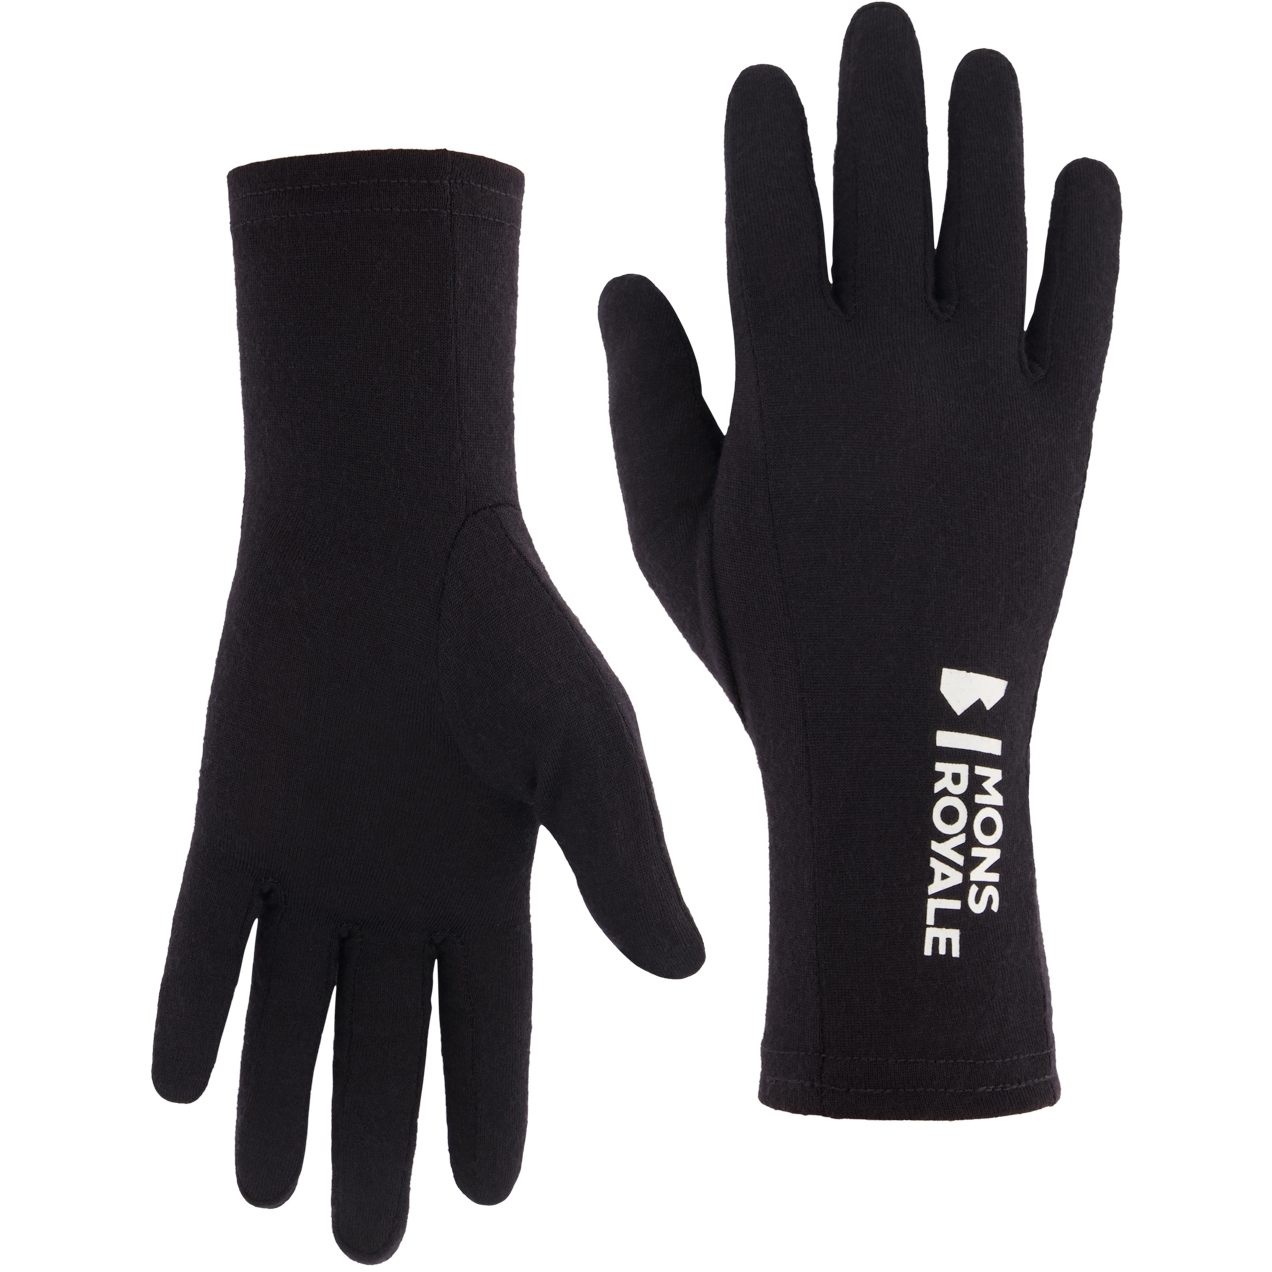 Produktbild von Mons Royale Volta Liner Handschuhe - schwarz